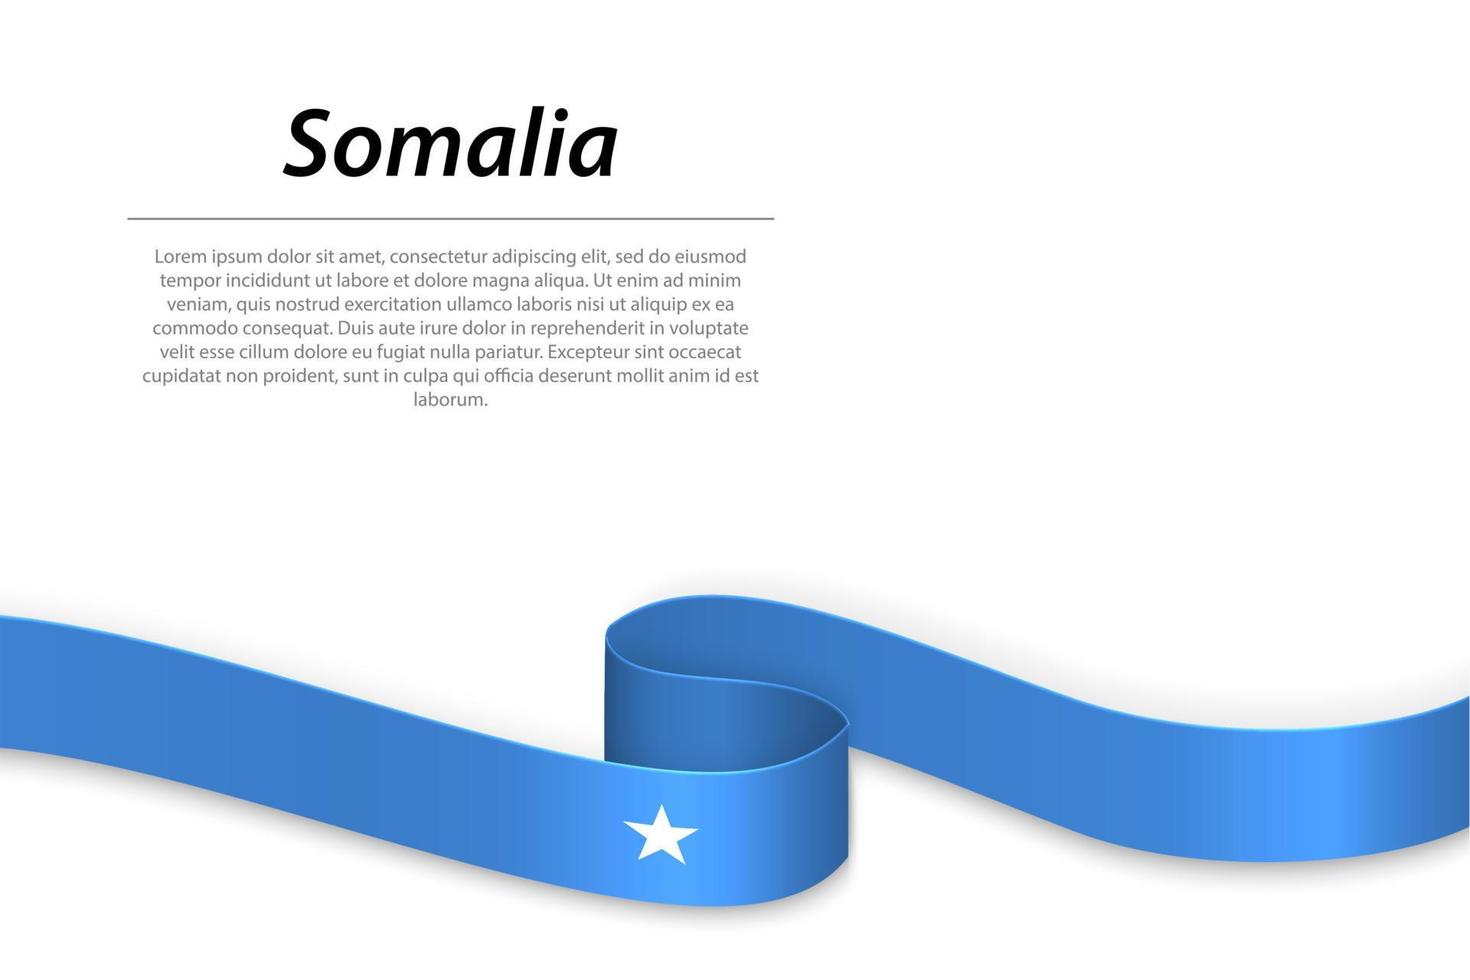 schwenkendes band oder banner mit flagge somalias vektor